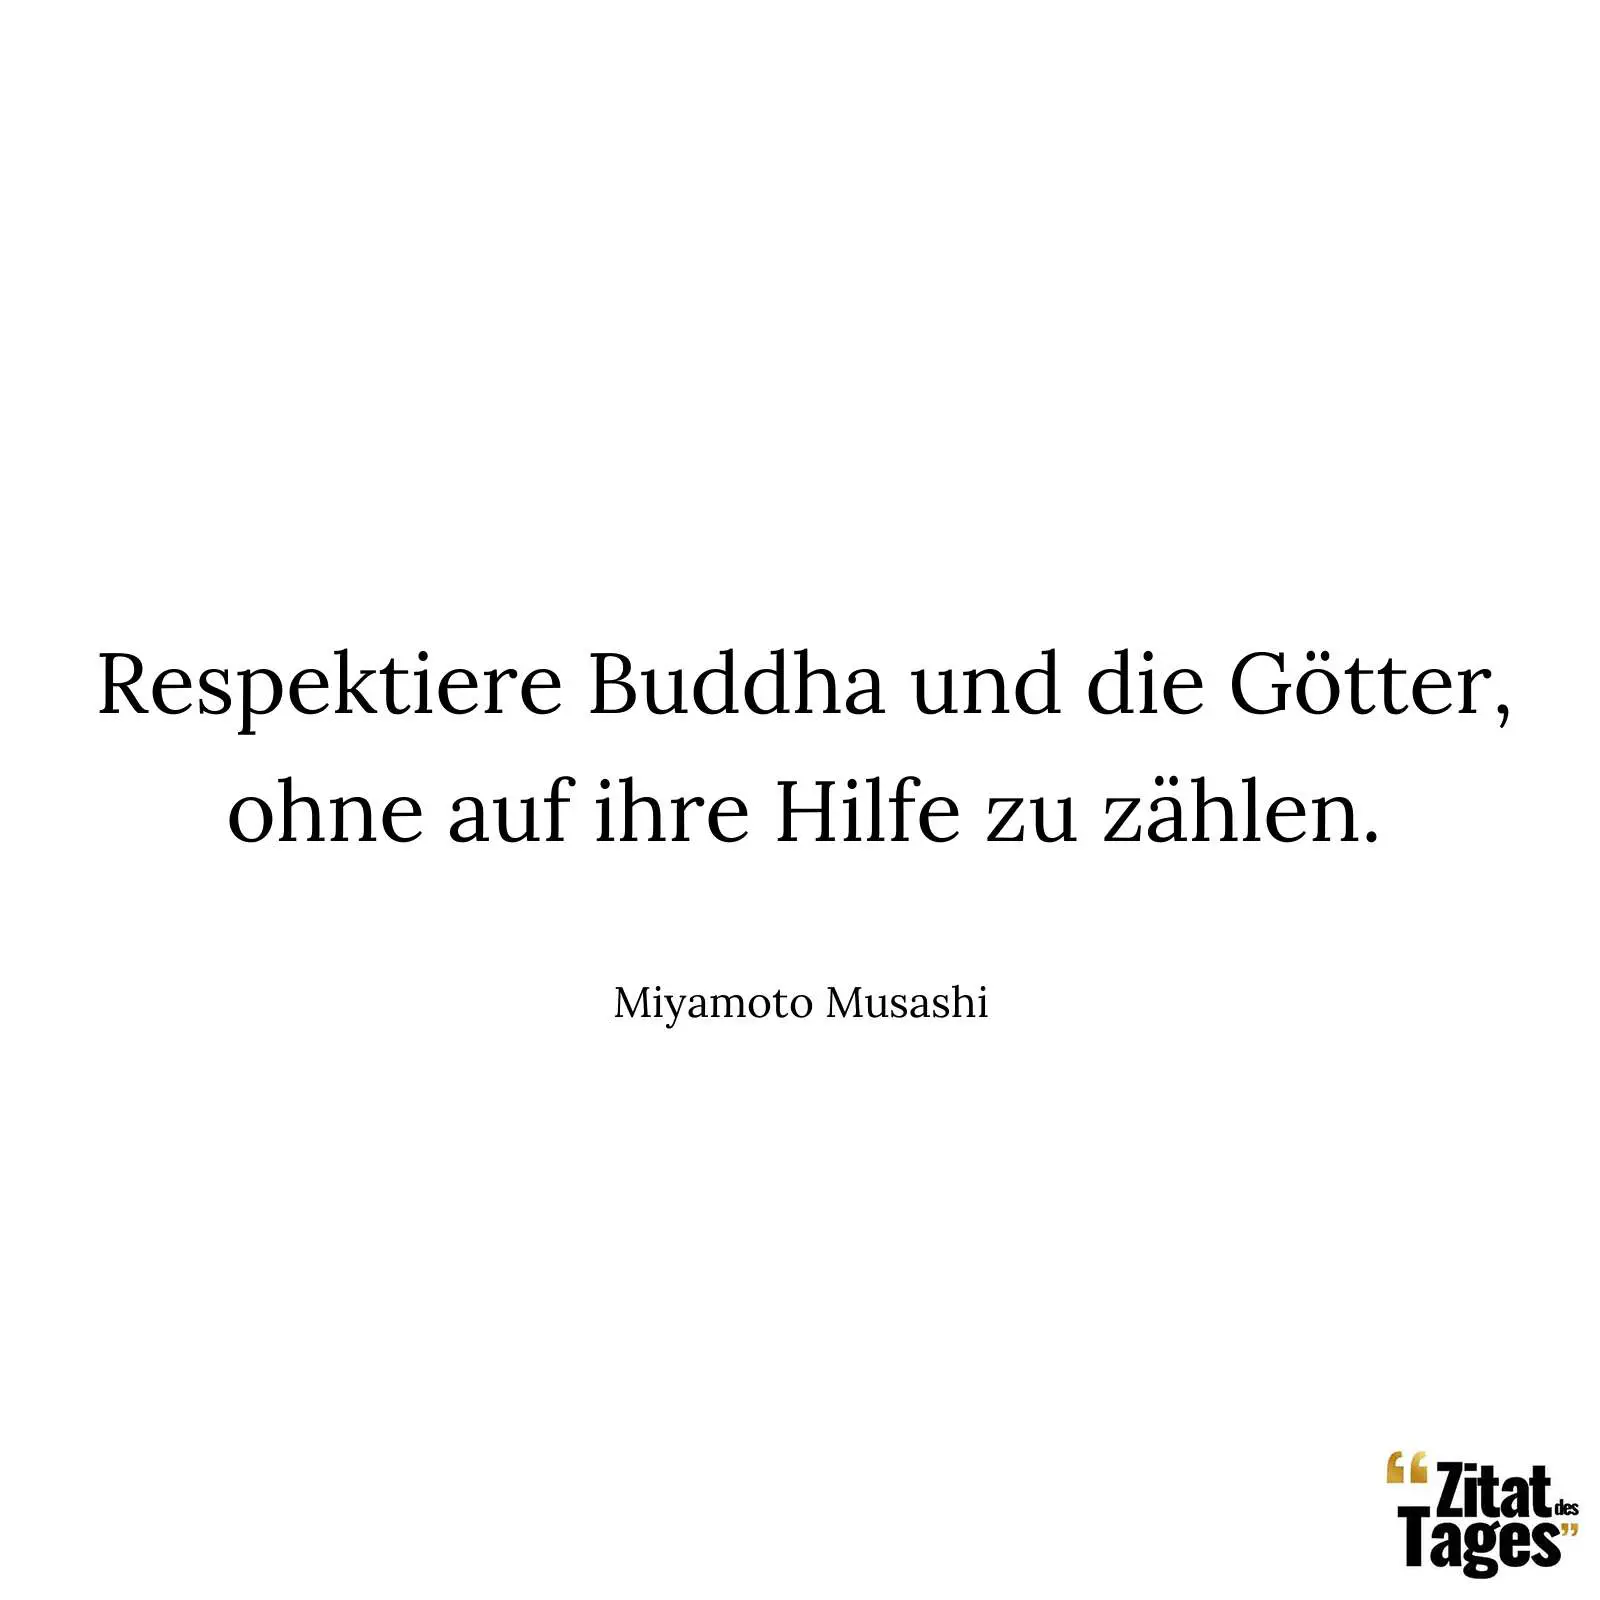 Respektiere Buddha und die Götter, ohne auf ihre Hilfe zu zählen. - Miyamoto Musashi